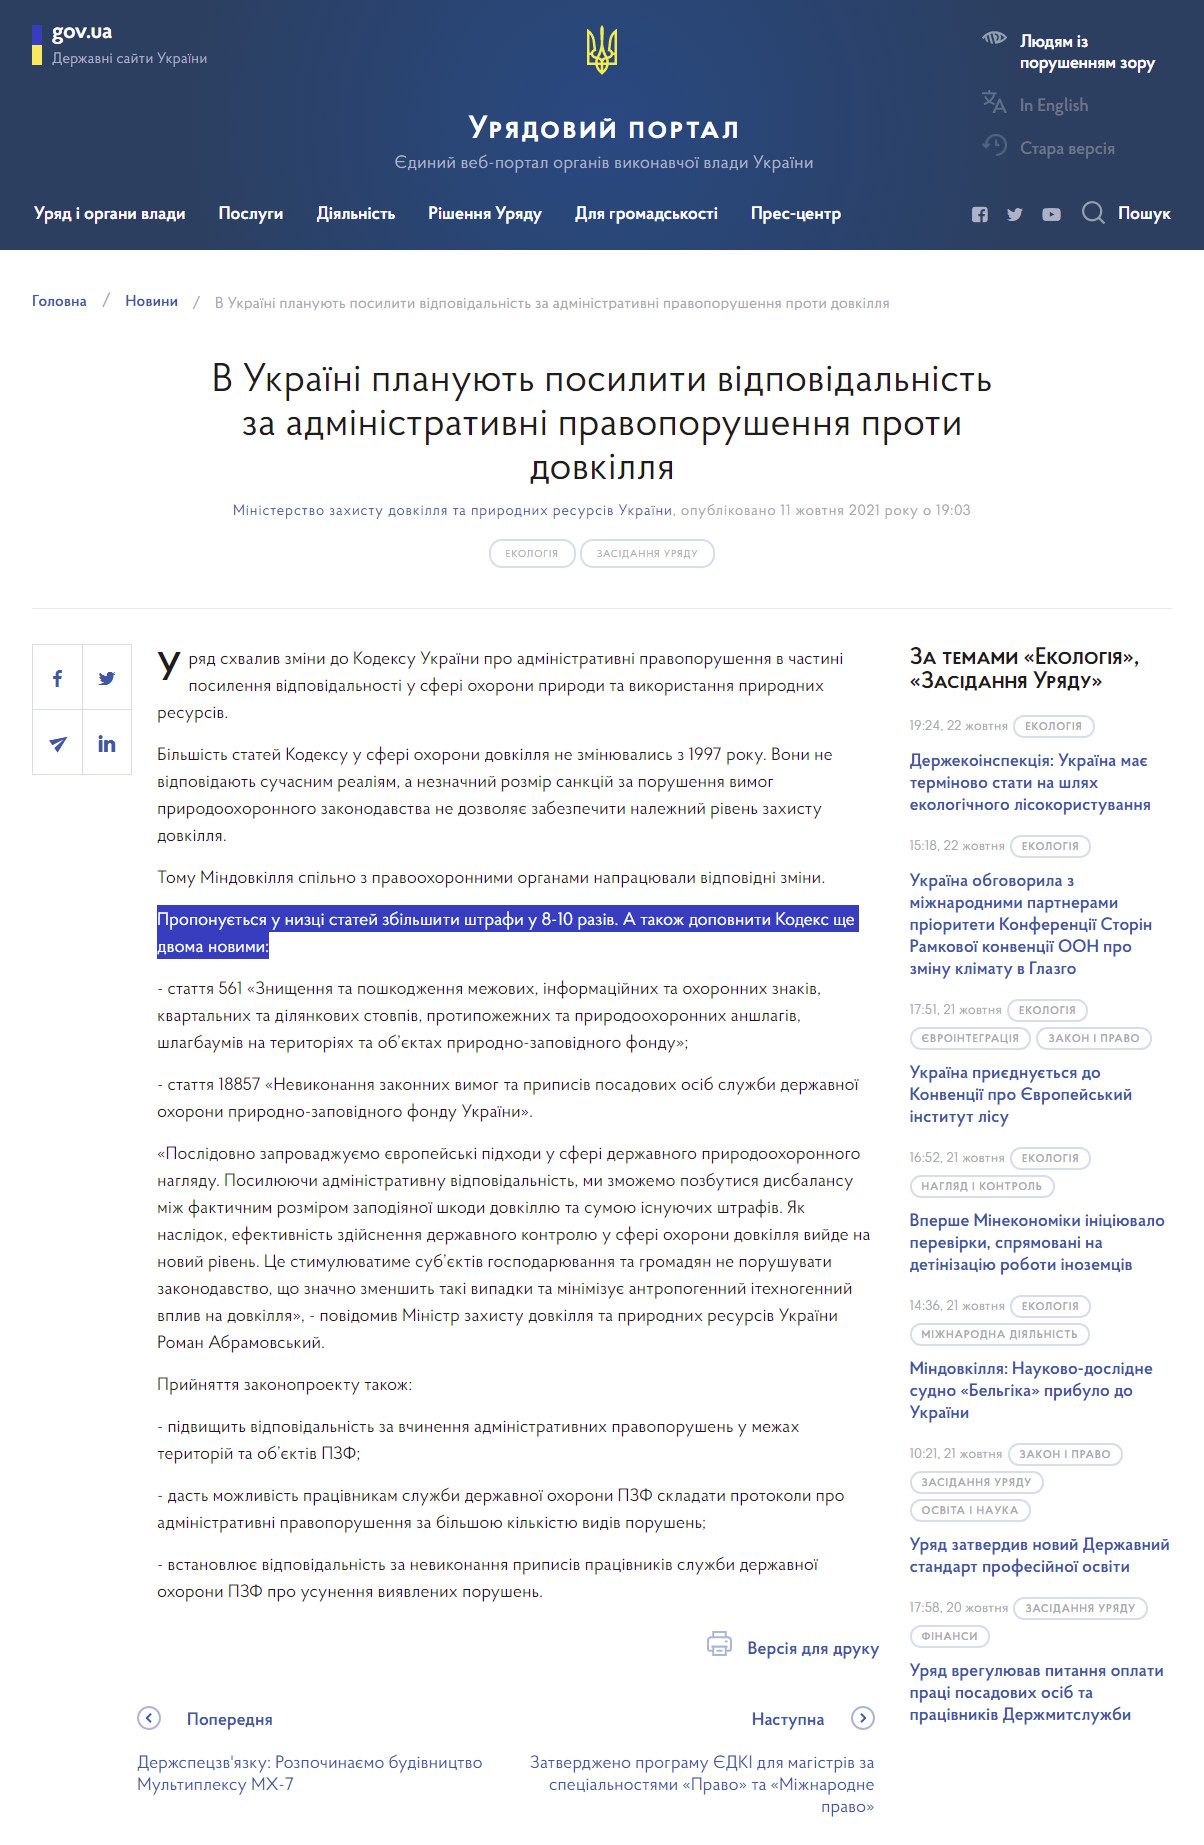 https://www.kmu.gov.ua/news/v-ukrayini-planuyut-posiliti-vidpovidalnist-za-administrativni-pravoporushennya-proti-dovkillya